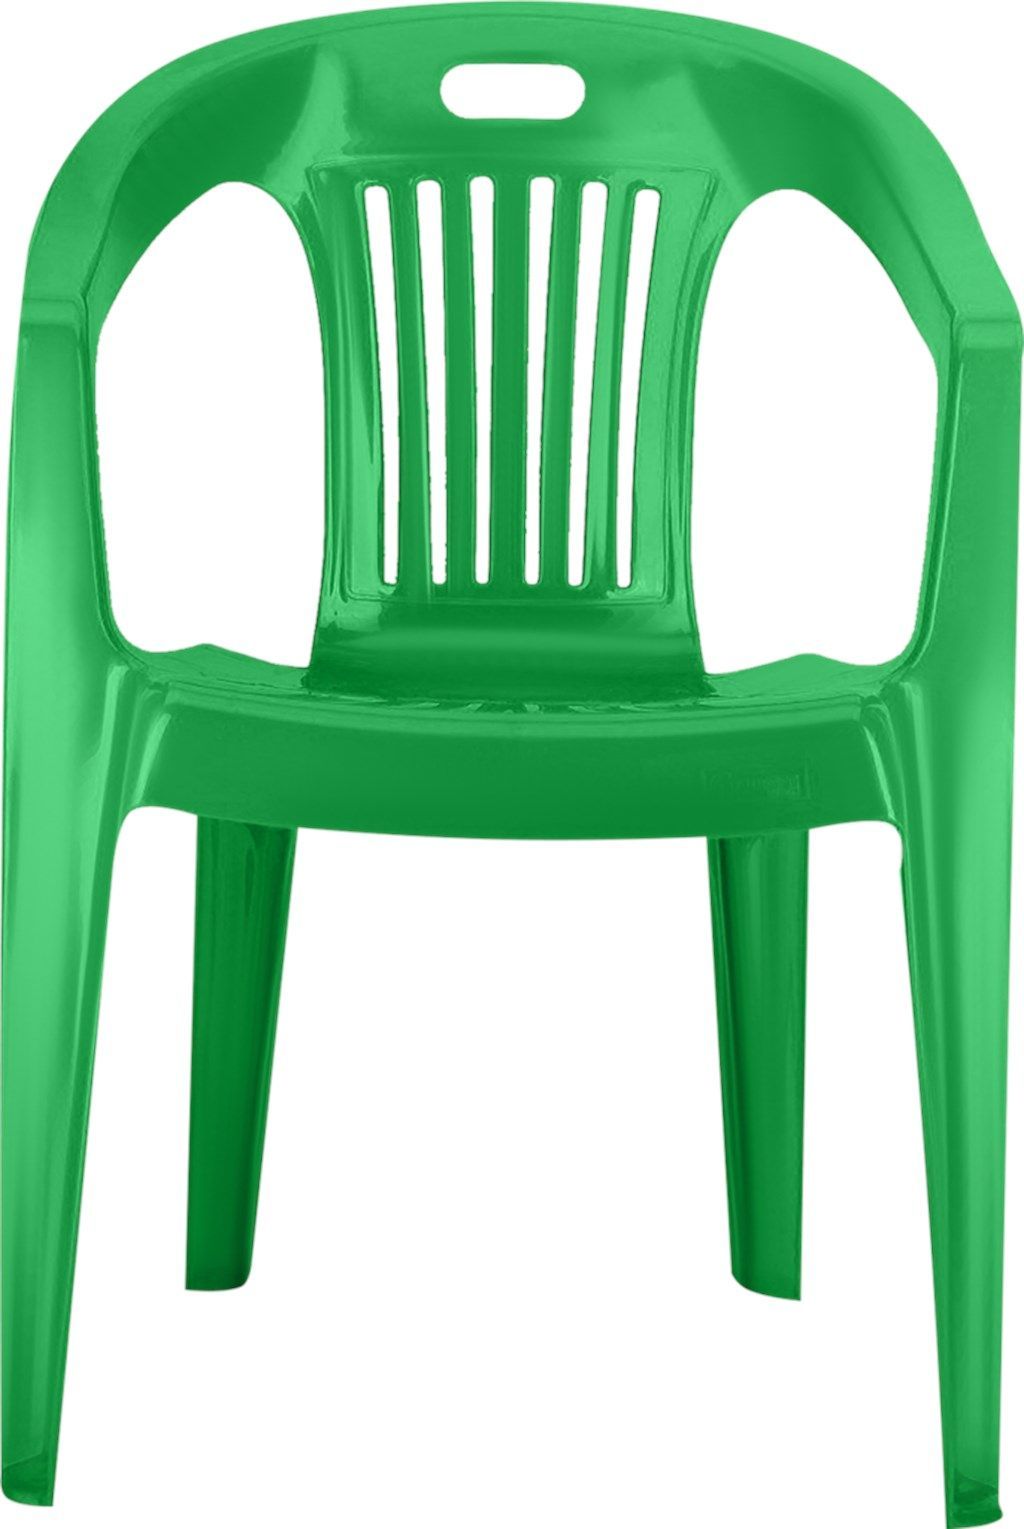 Кресло пластиковое зеленое для дачи